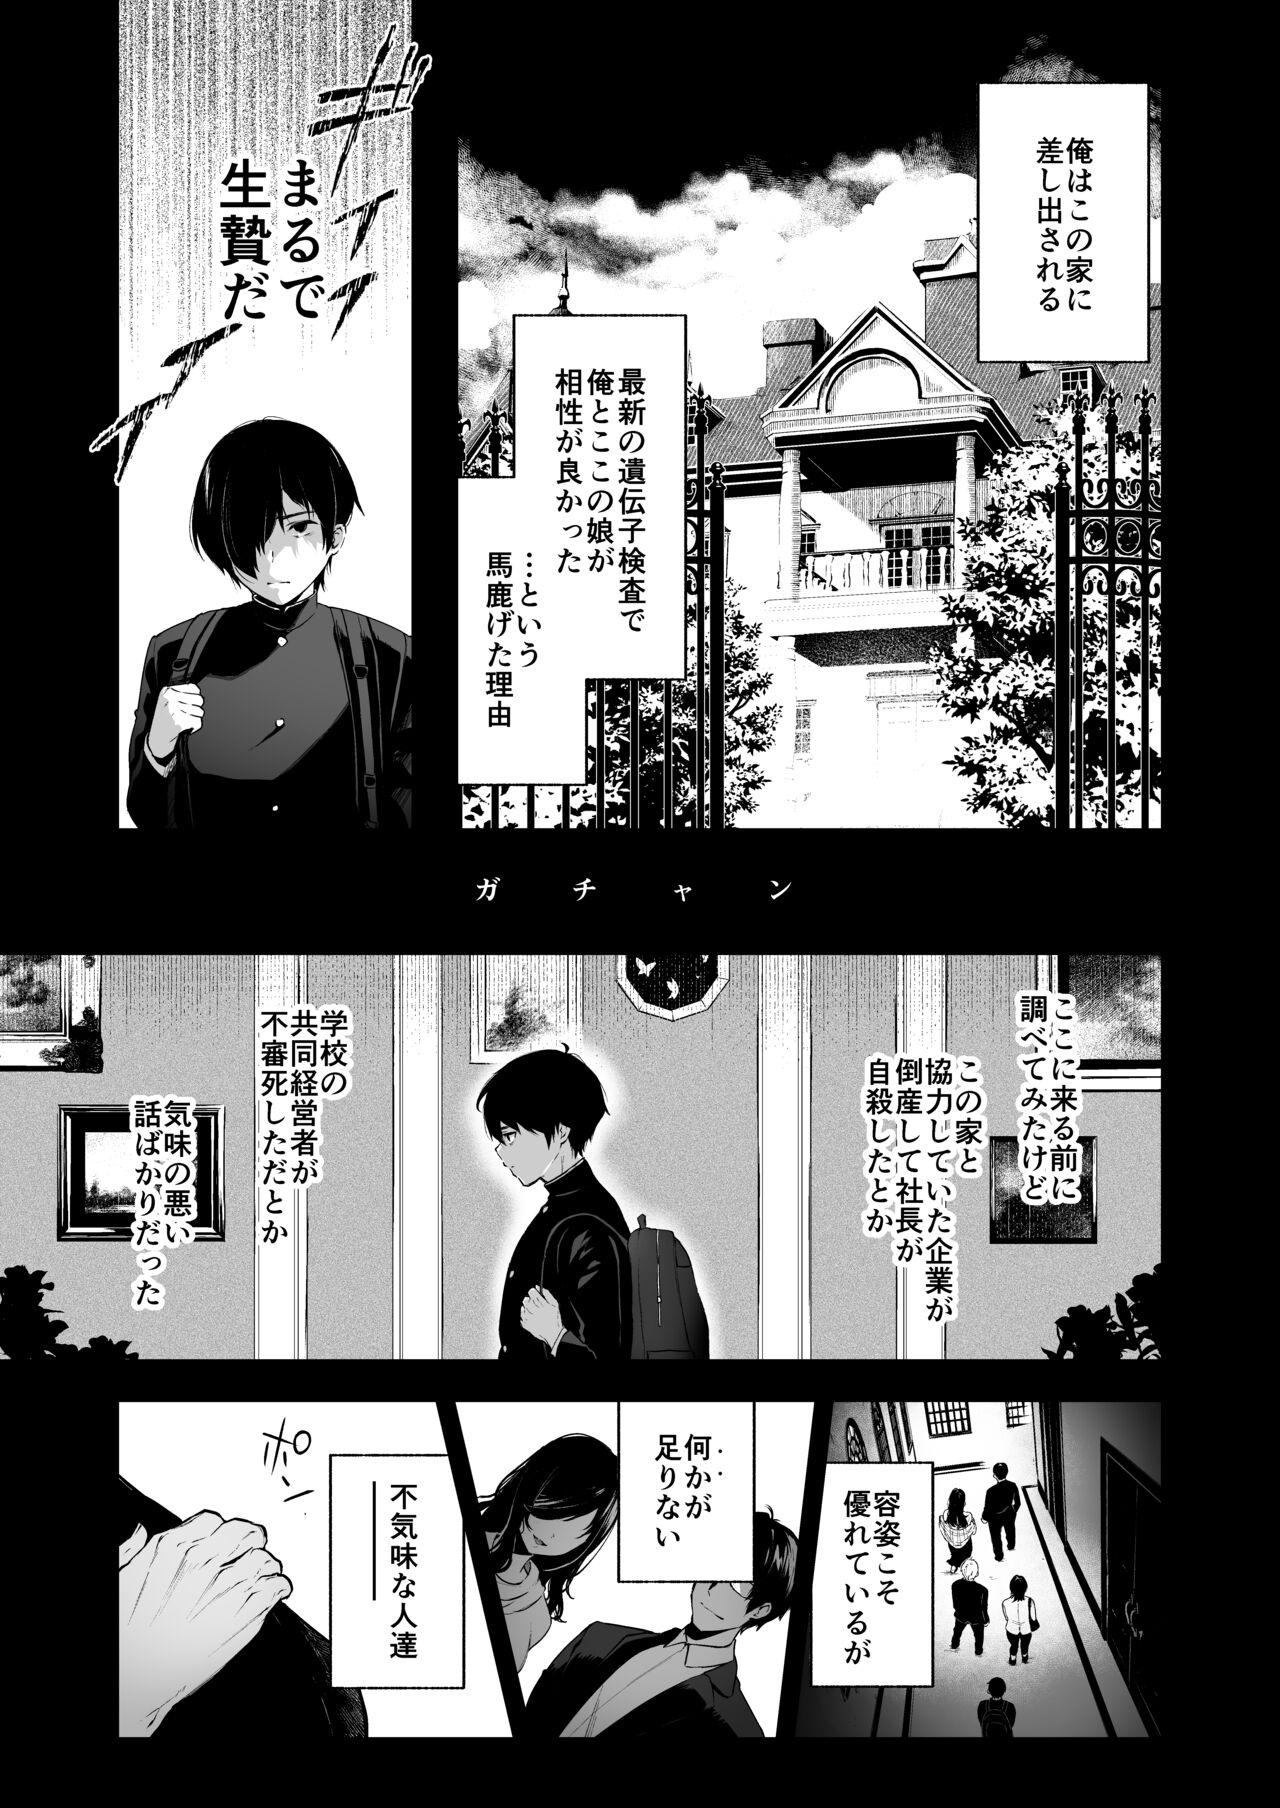 Spa Jorougumo no Hanazono 4 - Original Freak - Page 6